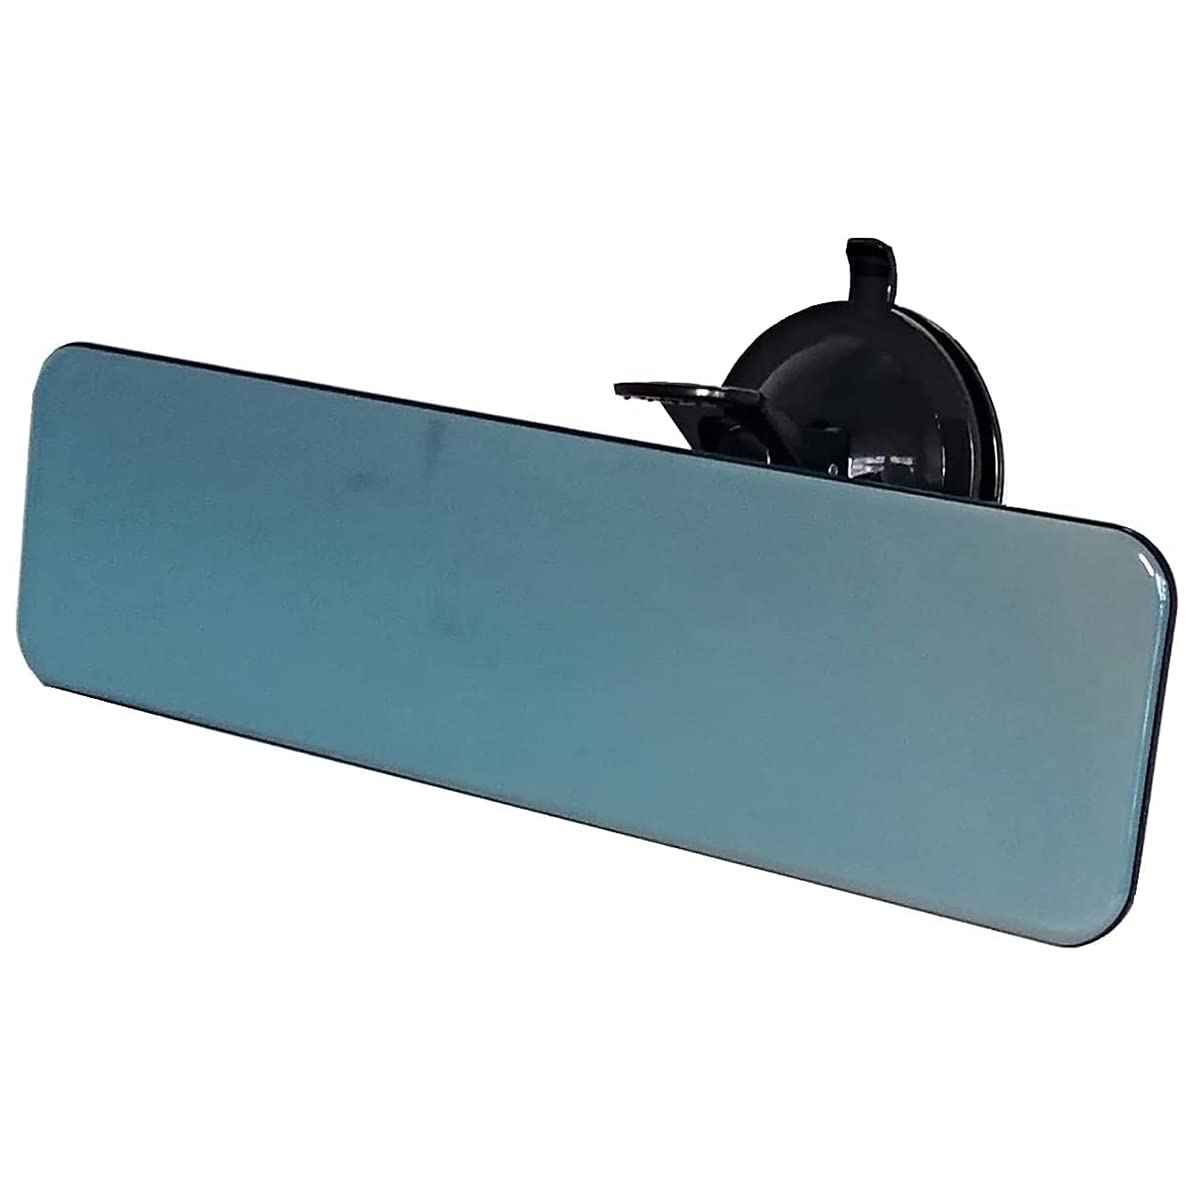 Auto Rückspiegel mit Saugnapf, Universal Panorama konvex Innenspiegel Gebogener Spiegel Innenrückspiegel Rückspiegel Innen für Auto Lkw Pkw Kfz Suv (Blauer Spiegel, Randlos 280mm) von TangDao